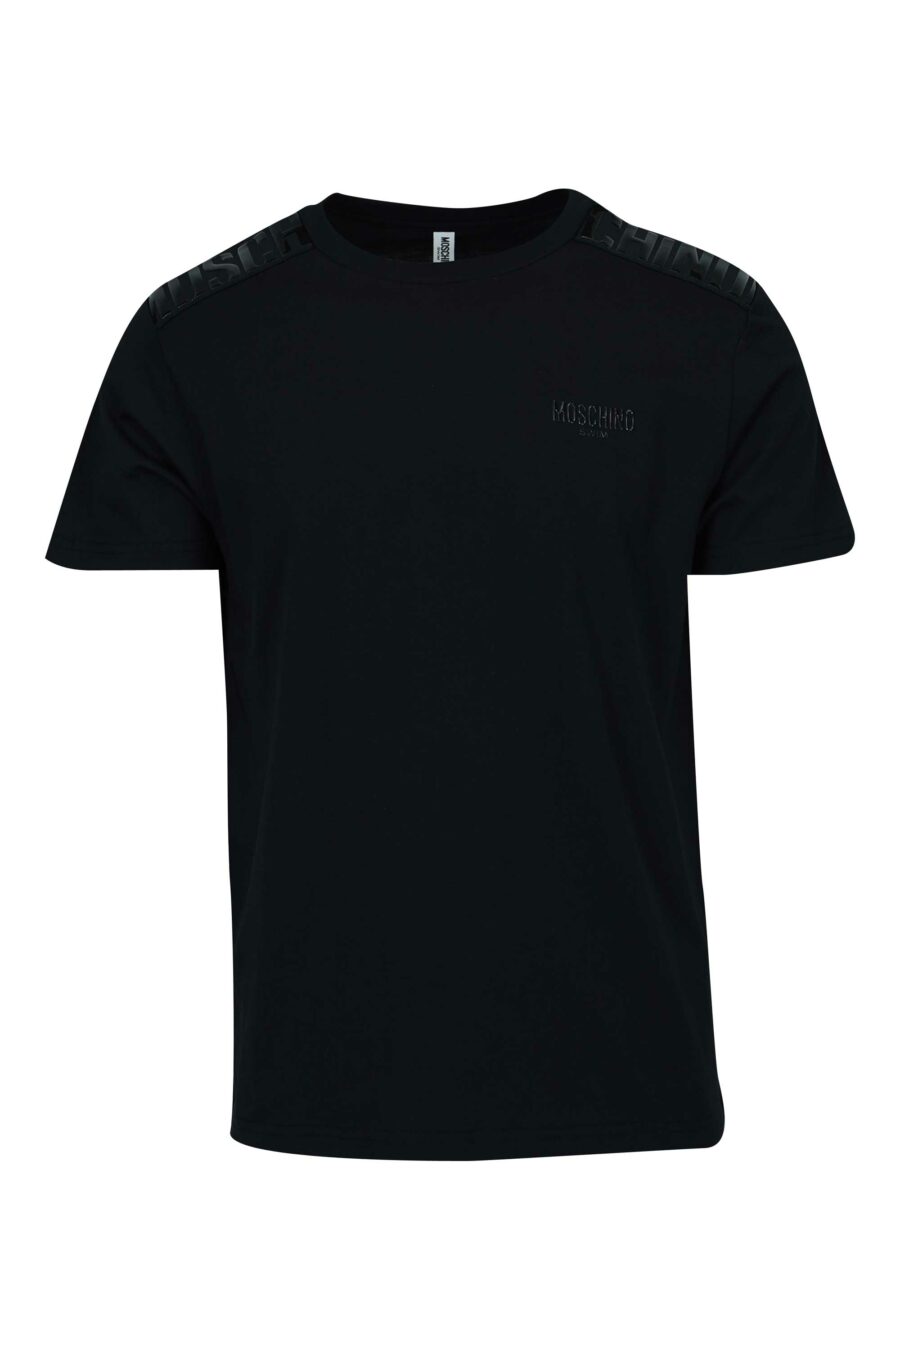 T-shirt noir avec logo en caoutchouc monochrome sur les épaules - 667113671994